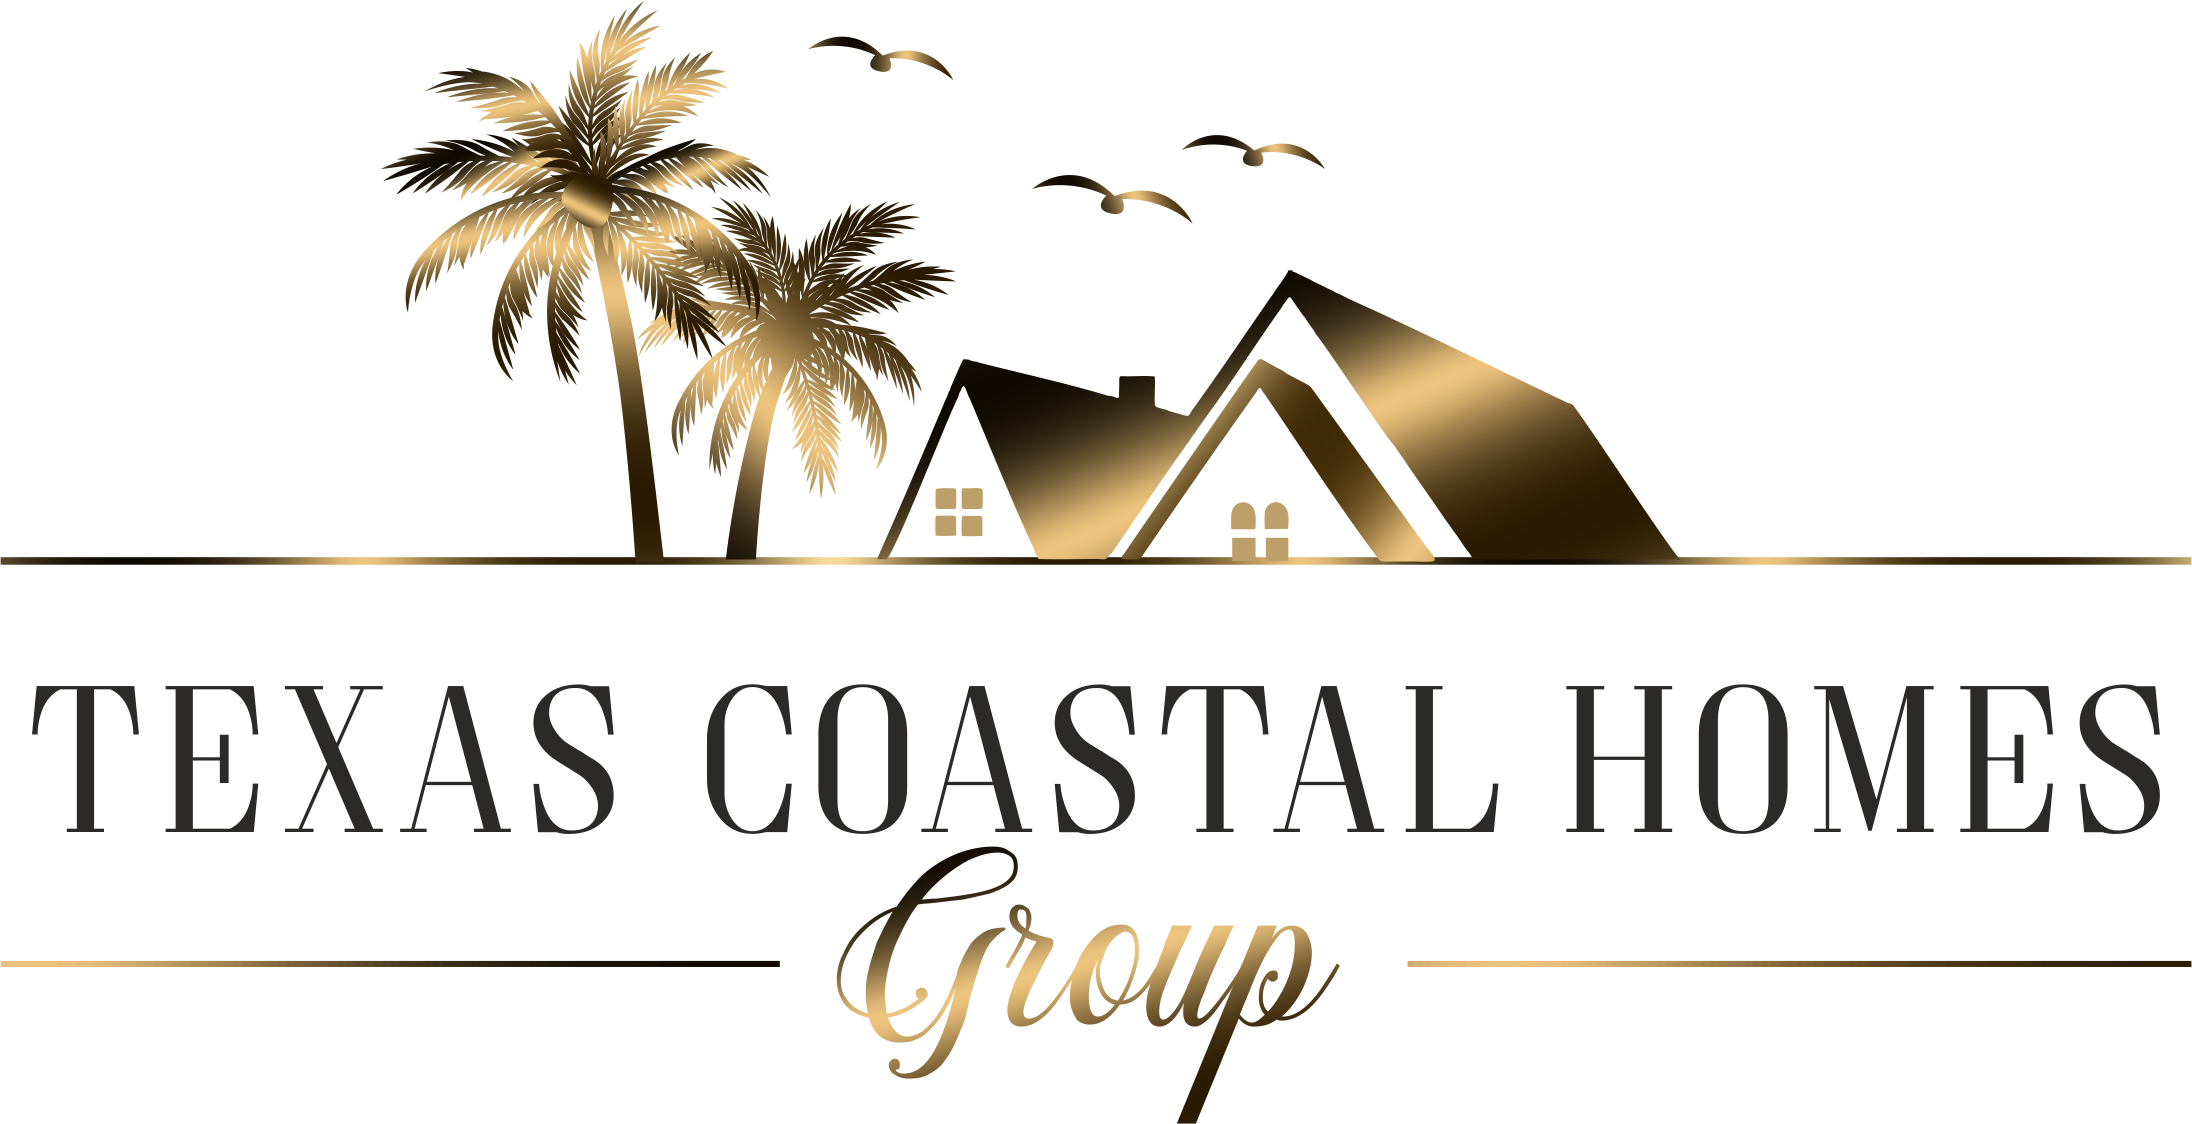 Texas Coastal Homes Group at MGM Real Estate Professionals